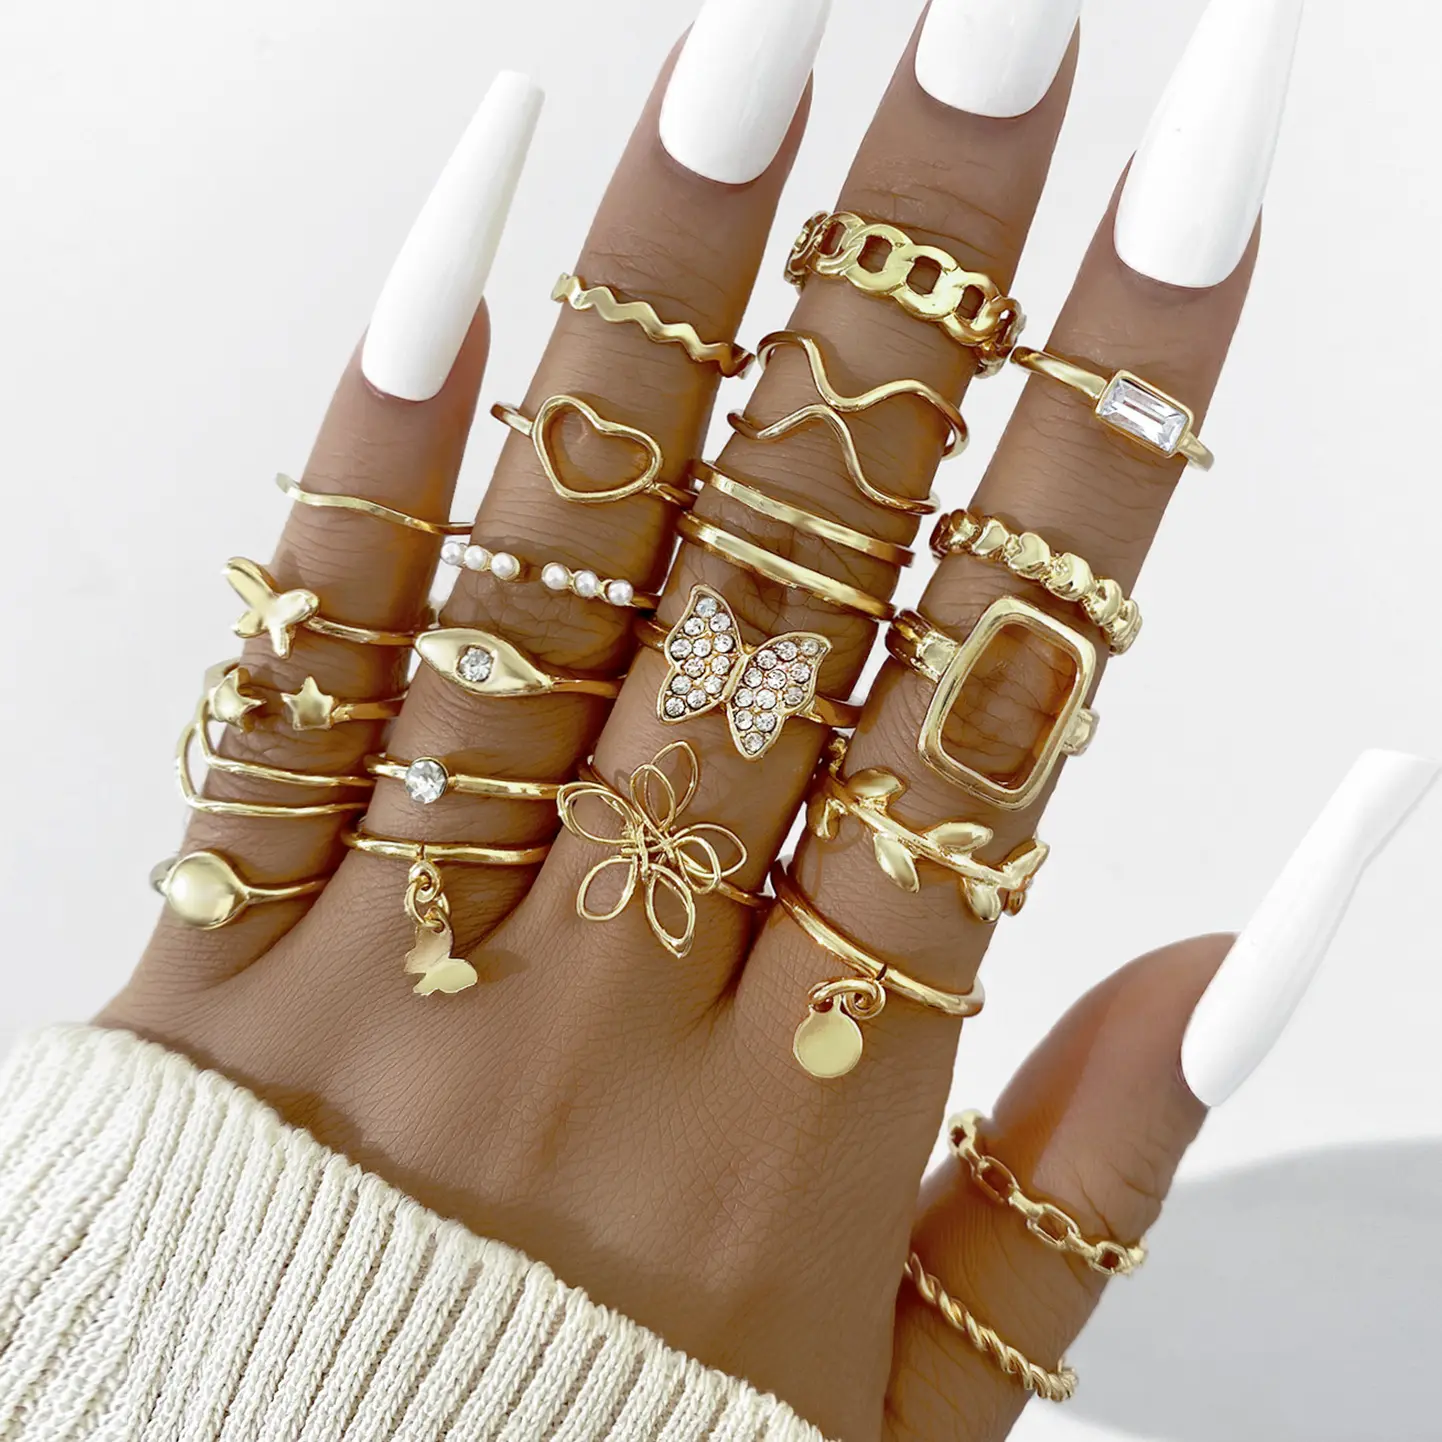 22 unid/set joyería de moda anillos de aleación de perlas chapado en oro amor mariposa para mujeres OEM ODM servicio anillo de compromiso 30 Set / CN;GUA